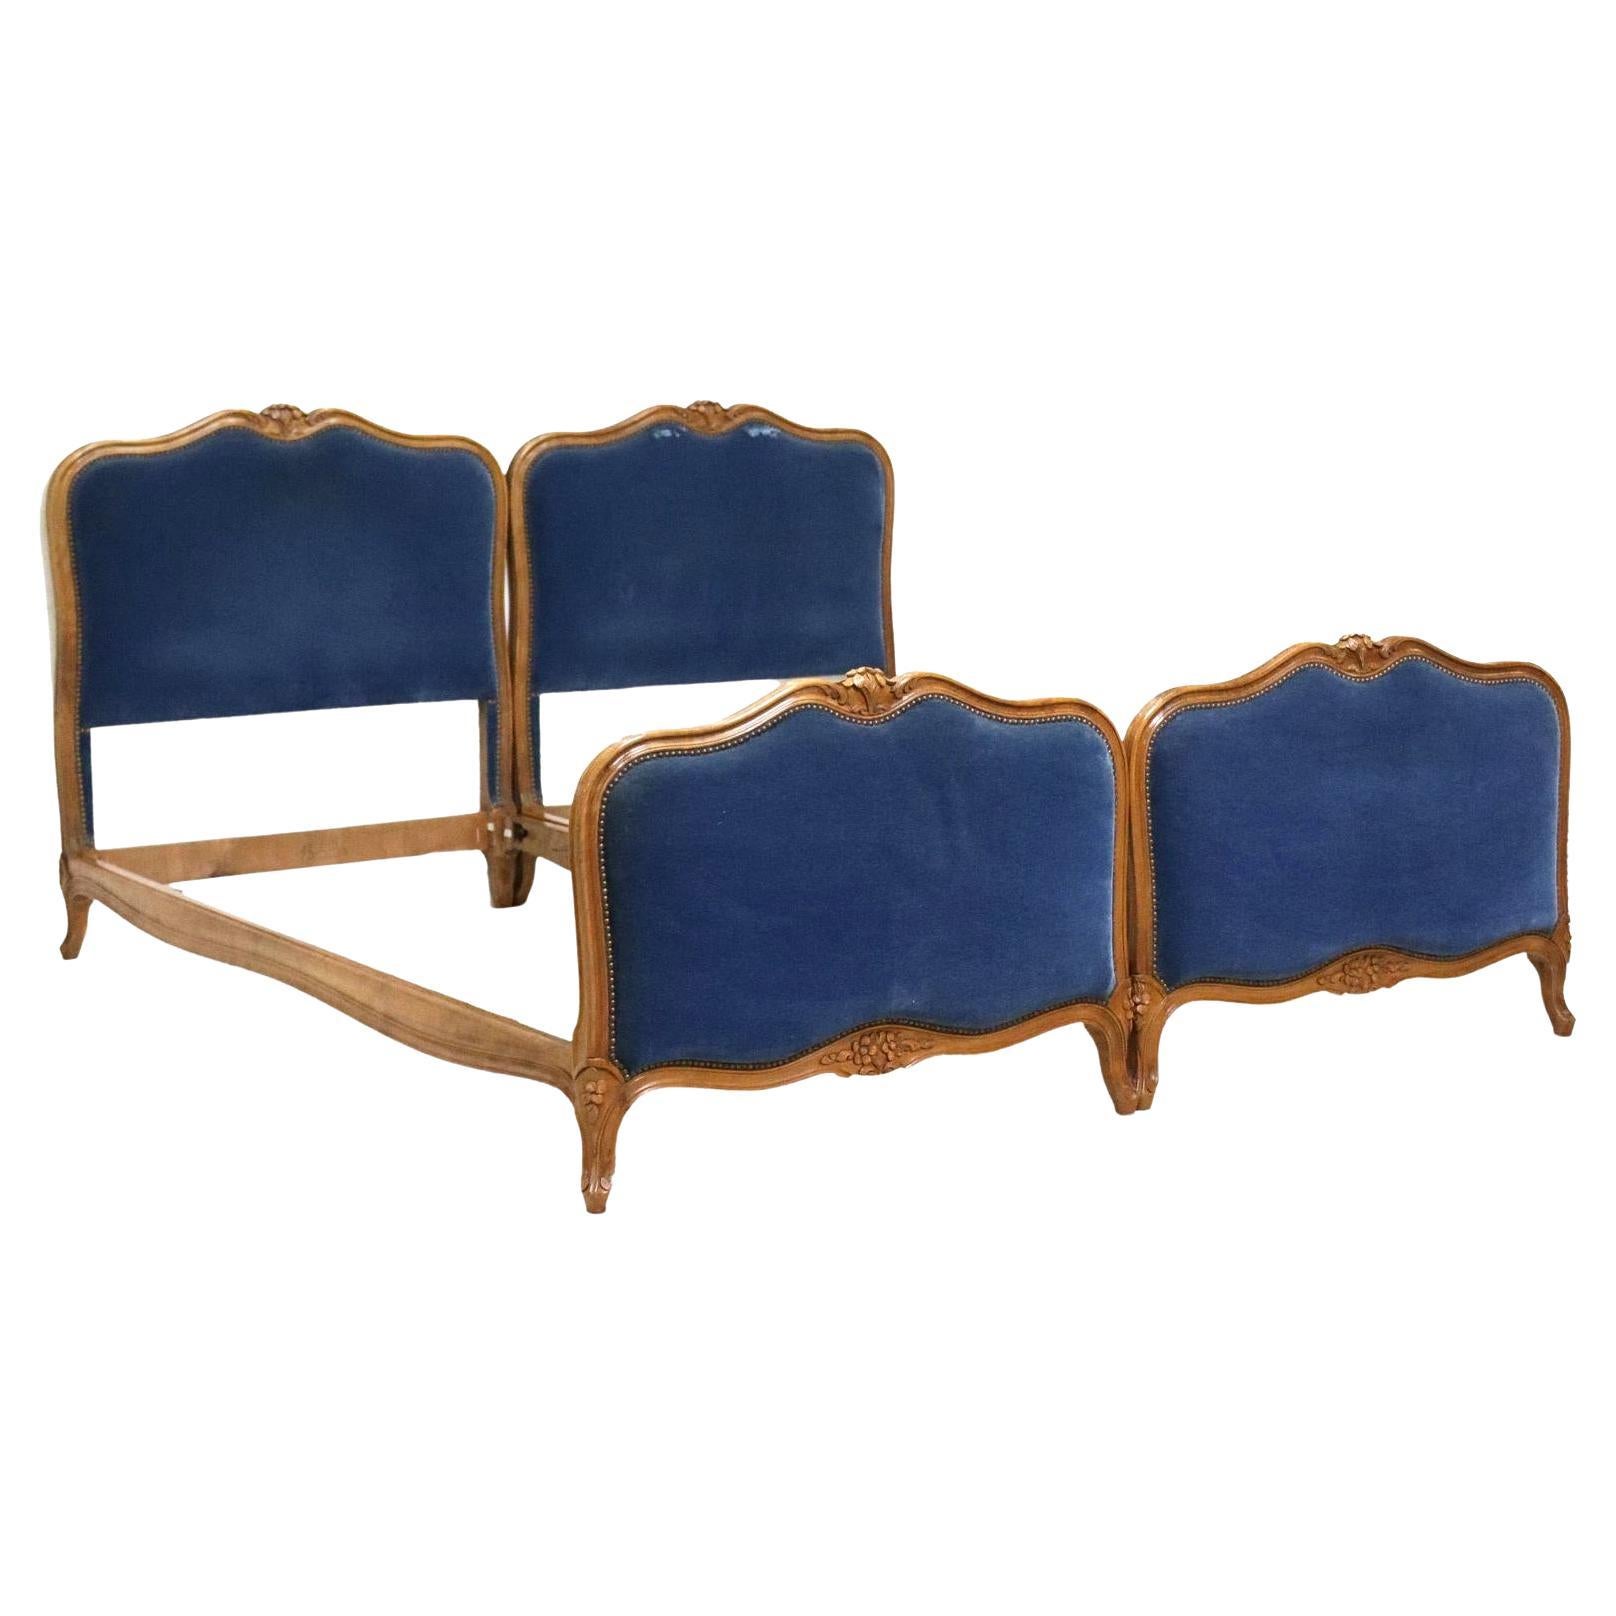 Paire de lits jumeaux de style Louis XV français ancien tapissés de velours bleu